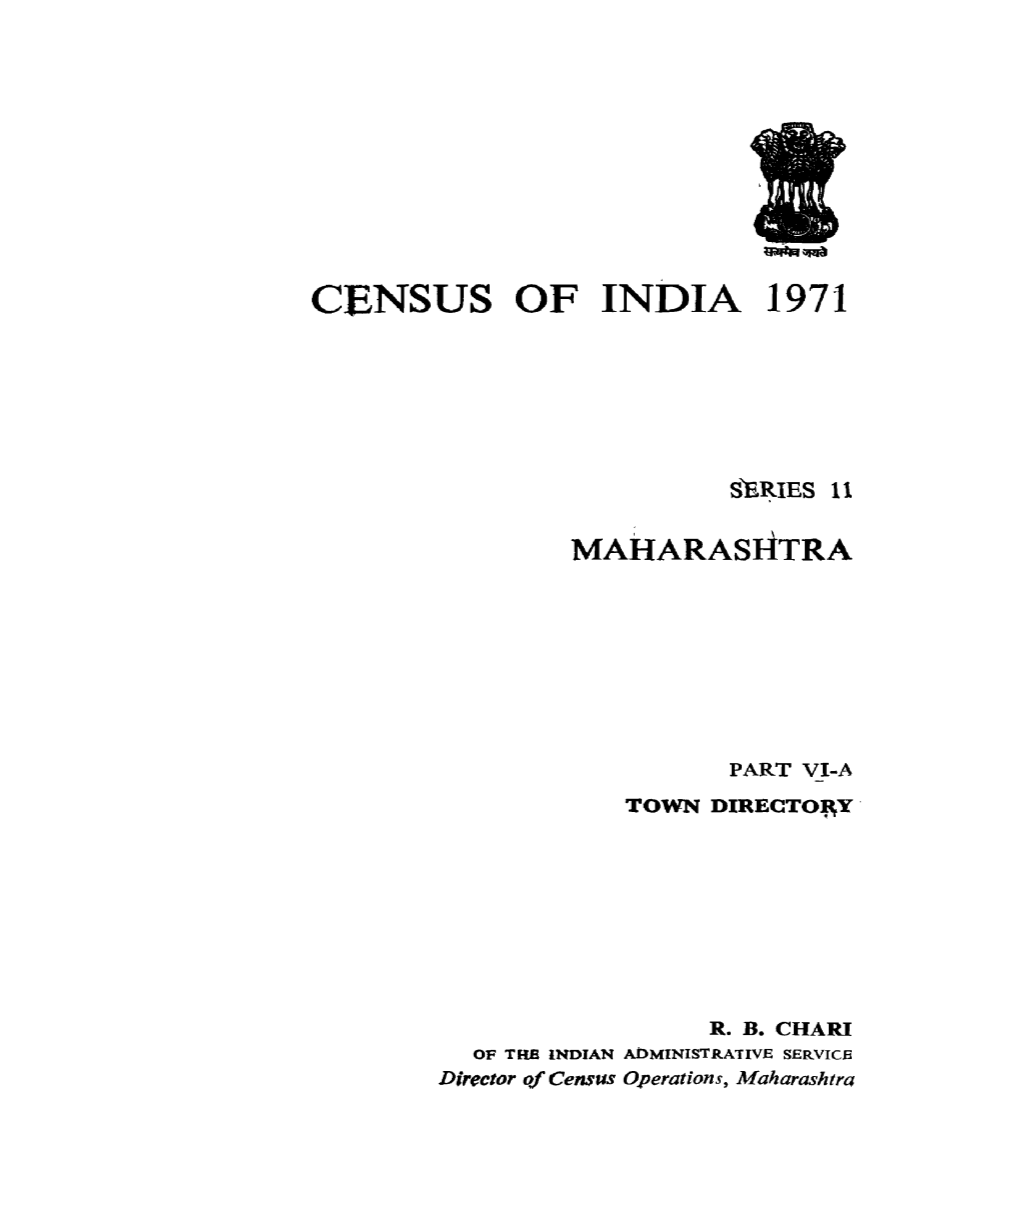 Census of India 1971